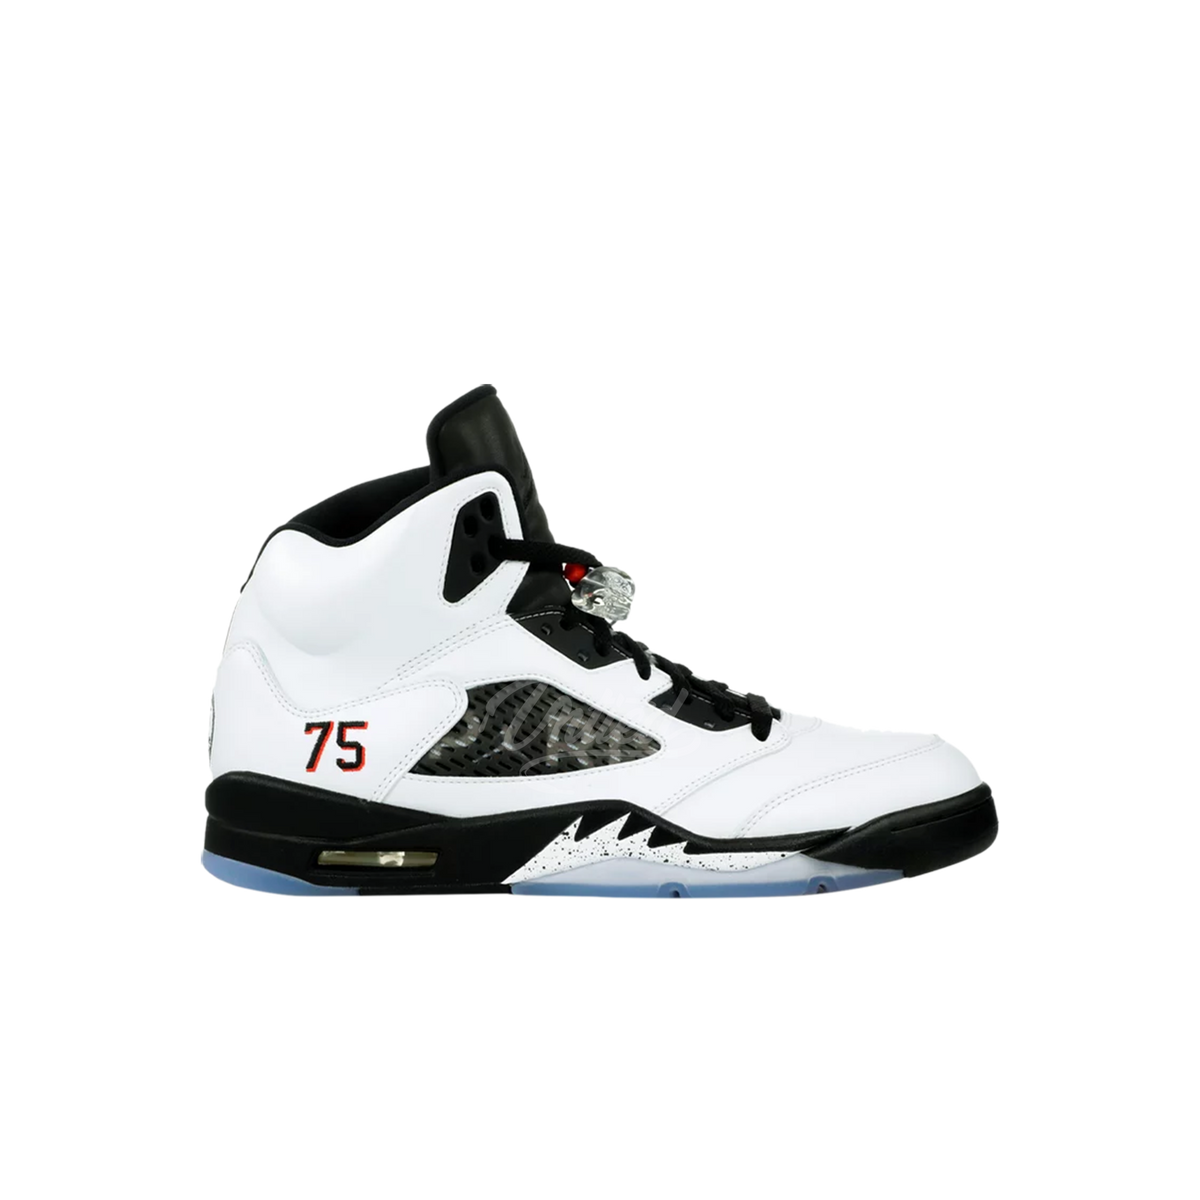 Air Jordan 5 PSG PE "White/Black"